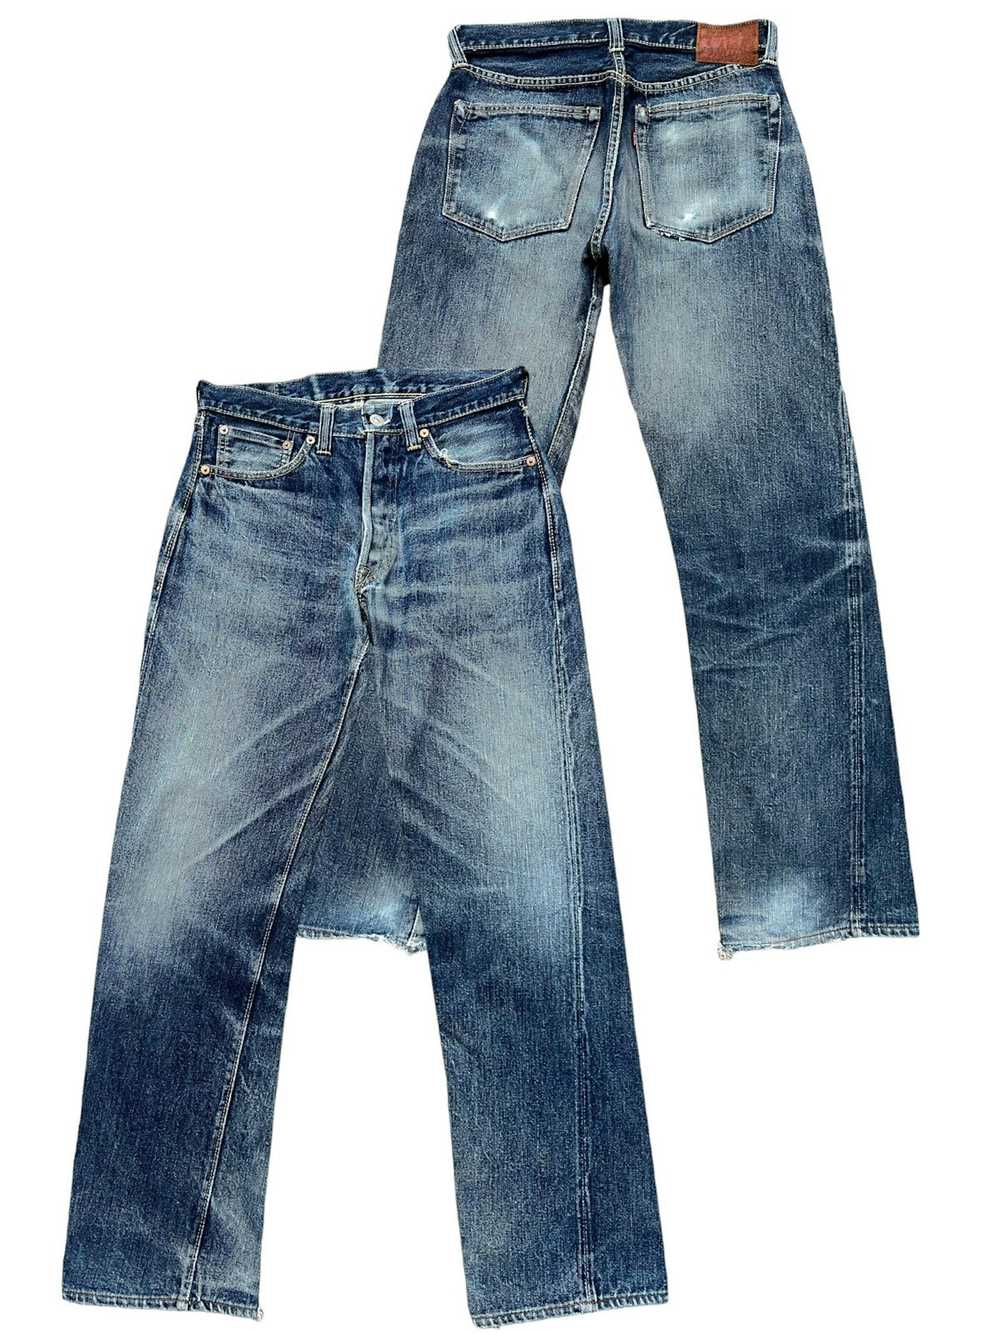 Real Denim Blue Jeans